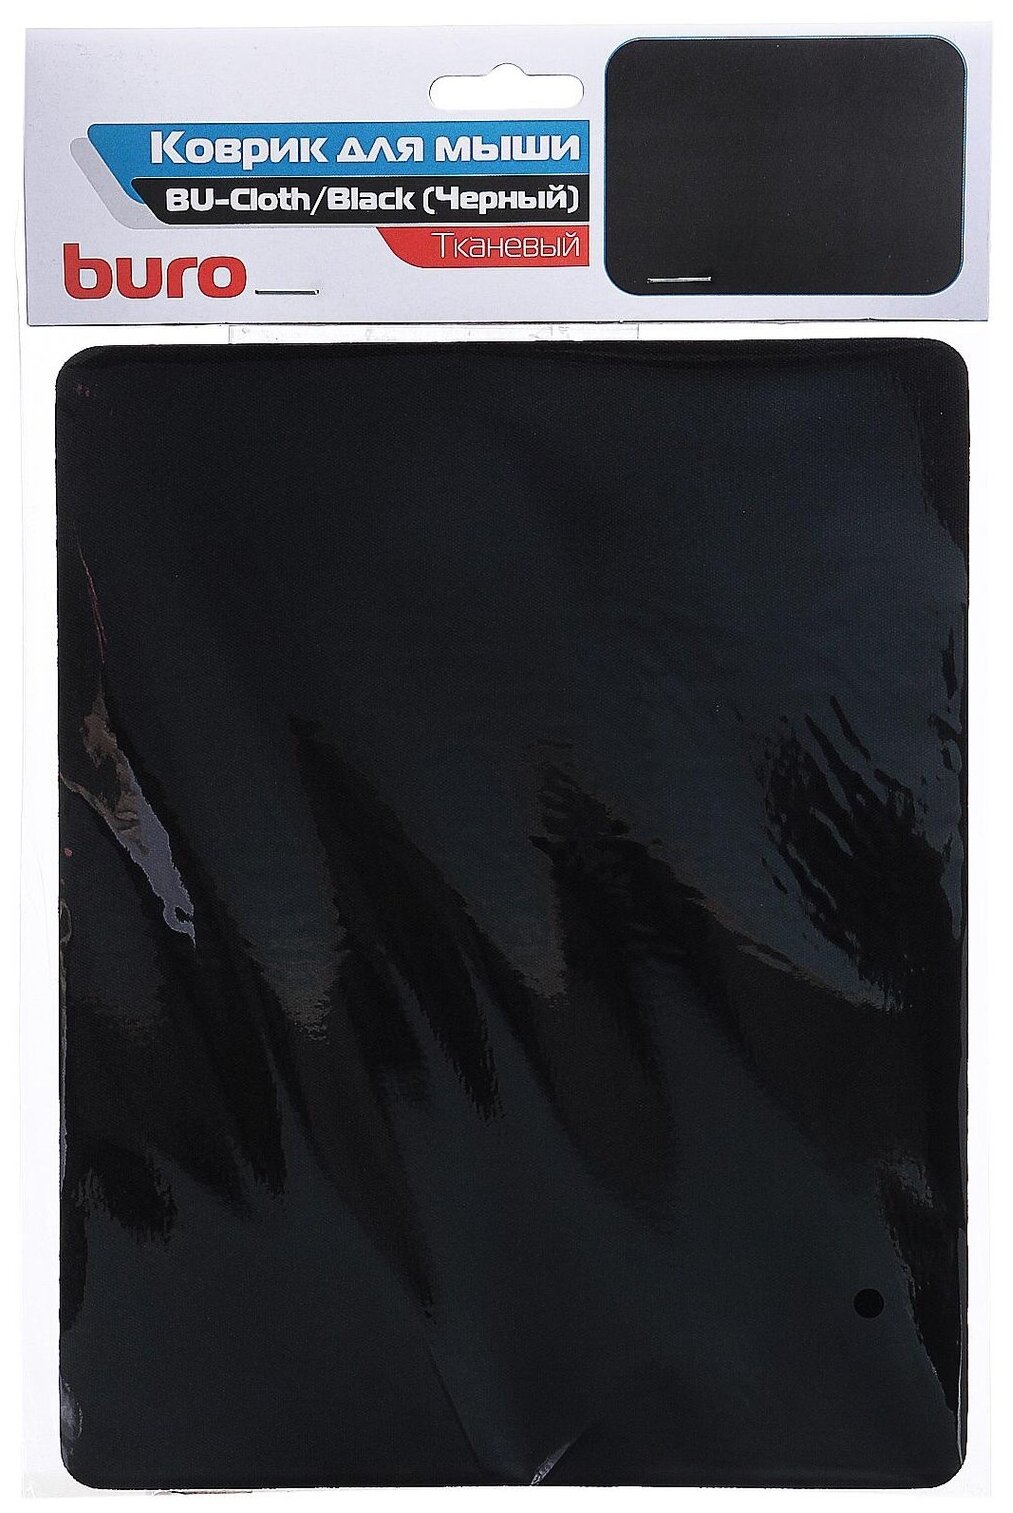 BURO (BU-CLOTH/black), чёрный, 230 х 180 х 3 мм